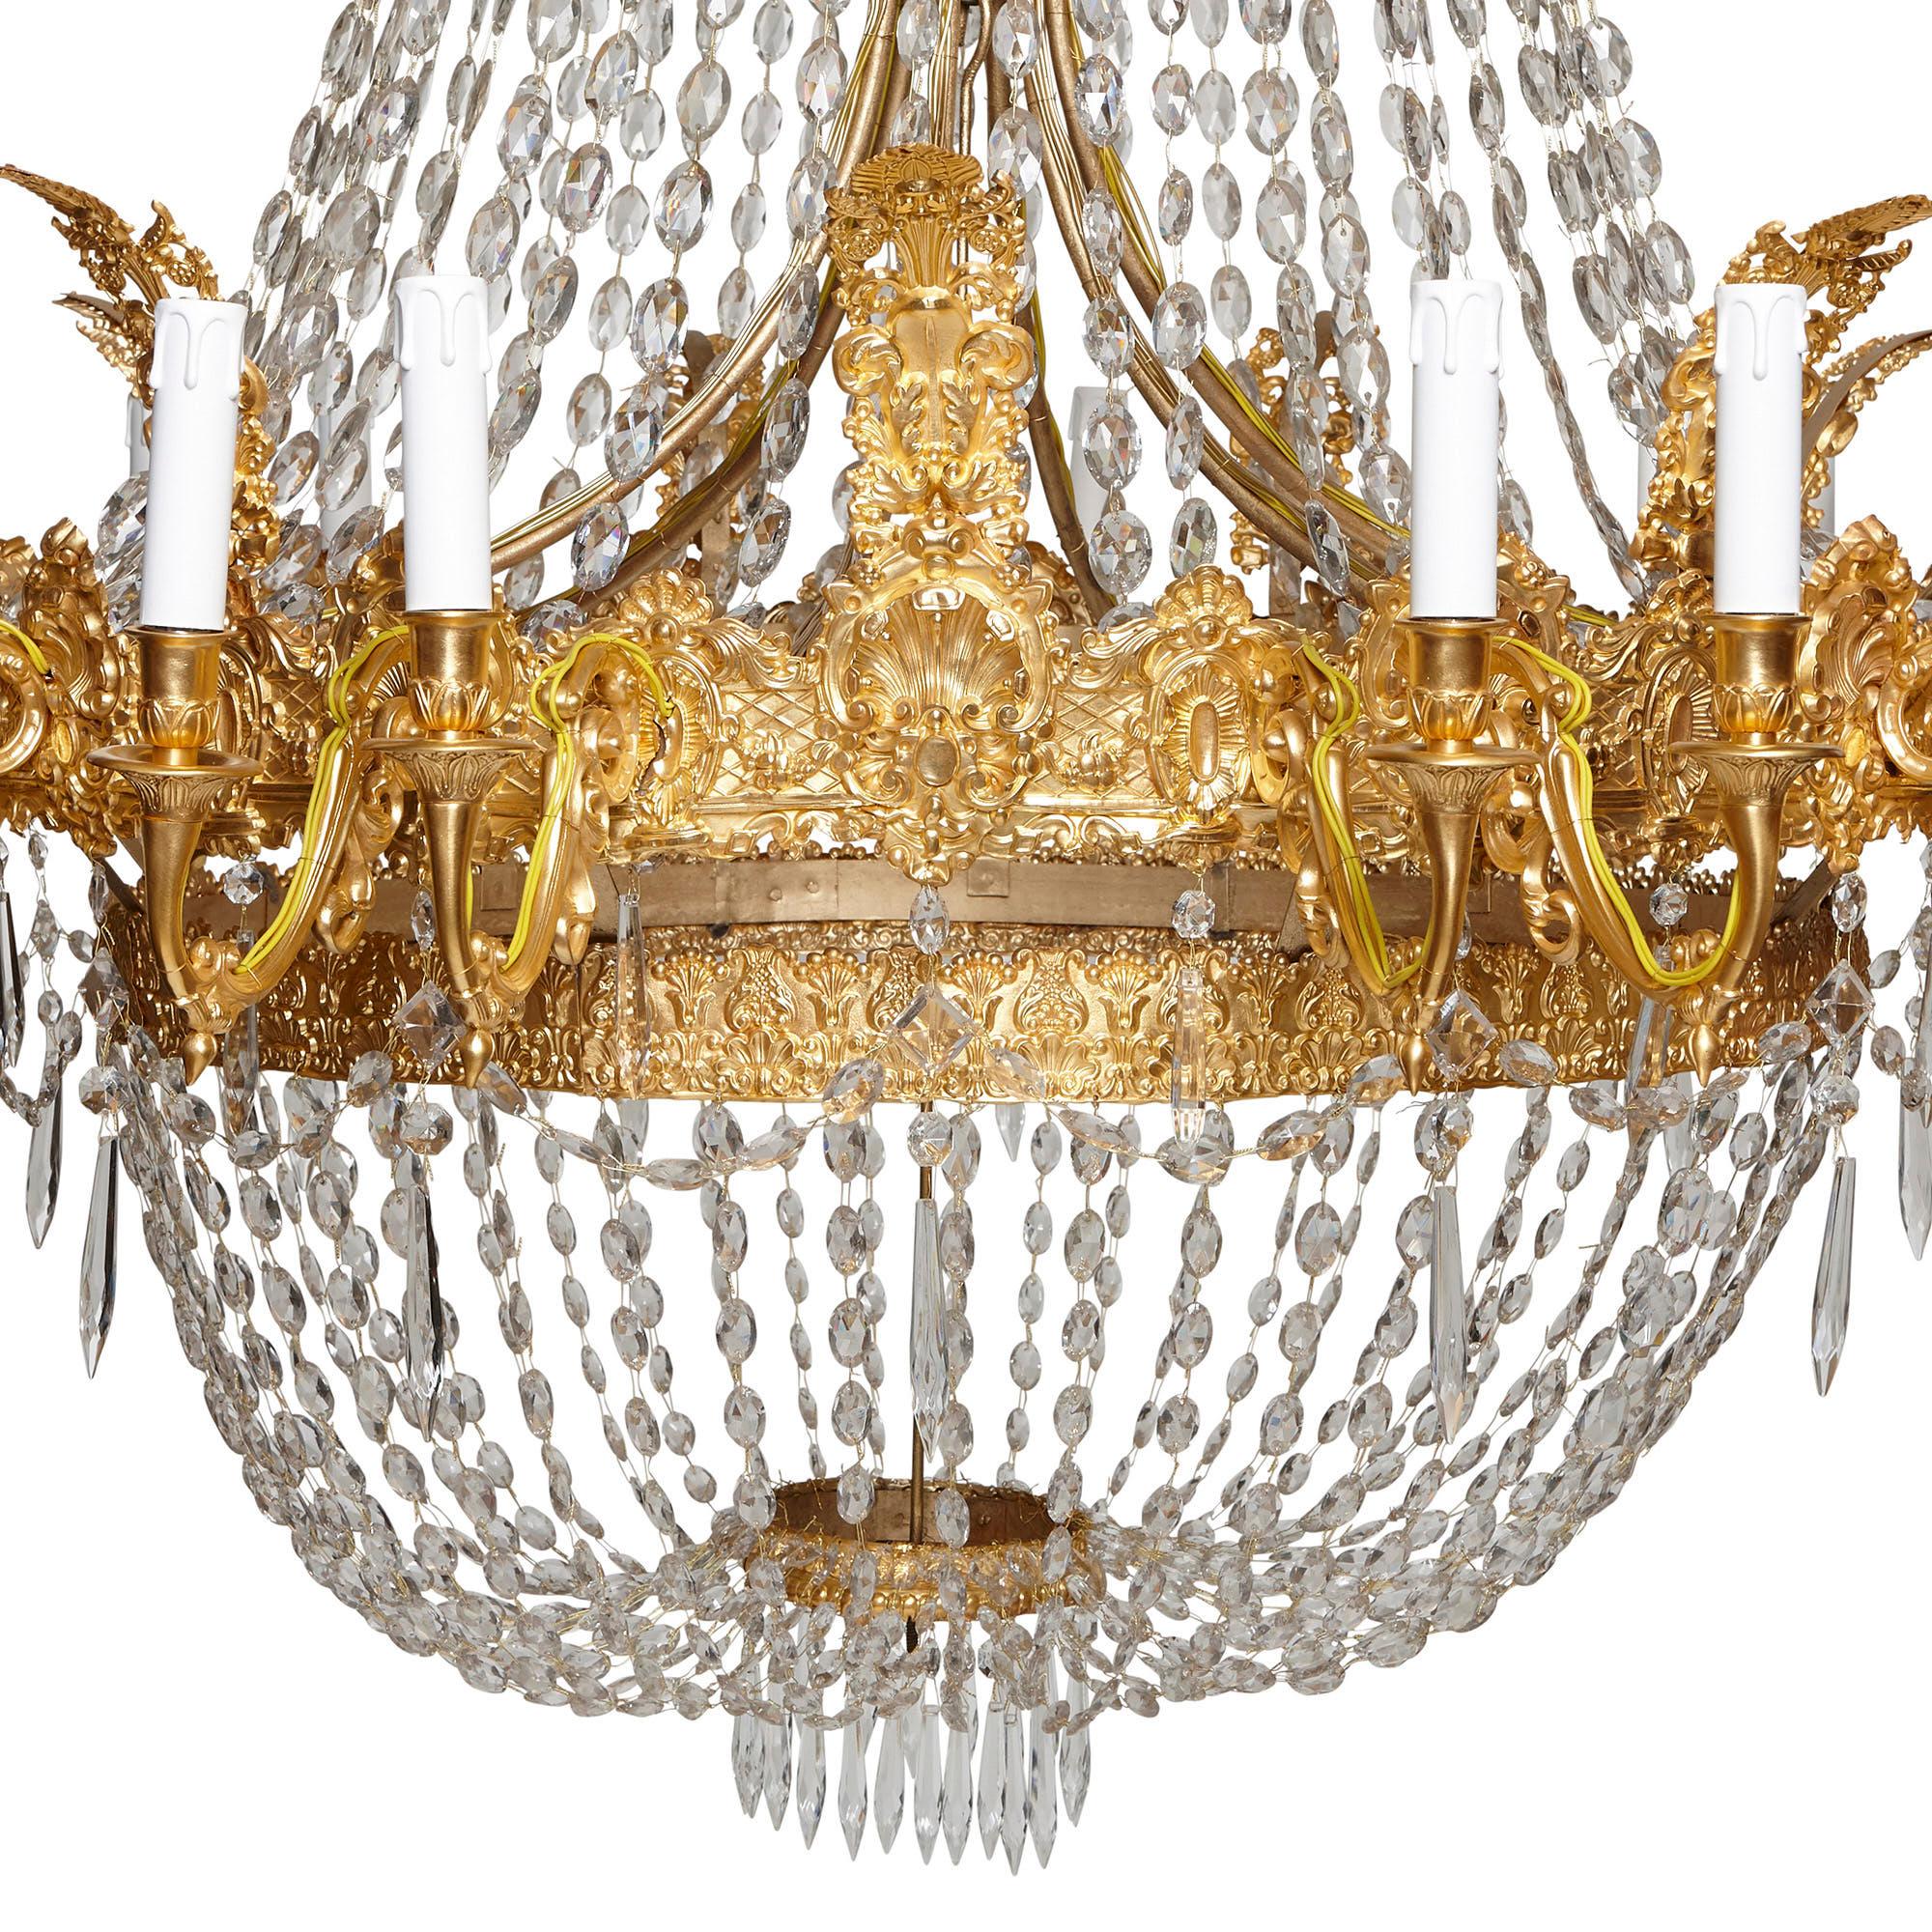 Dieser französische Kronleuchter aus dem 19. Jahrhundert ist im Empire-Stil gehalten und aus vergoldeter Bronze und geschliffenen Glasketten gefertigt. Der Kronleuchter besteht aus einem unteren kuppelförmigen Korpus unter einem überragenden